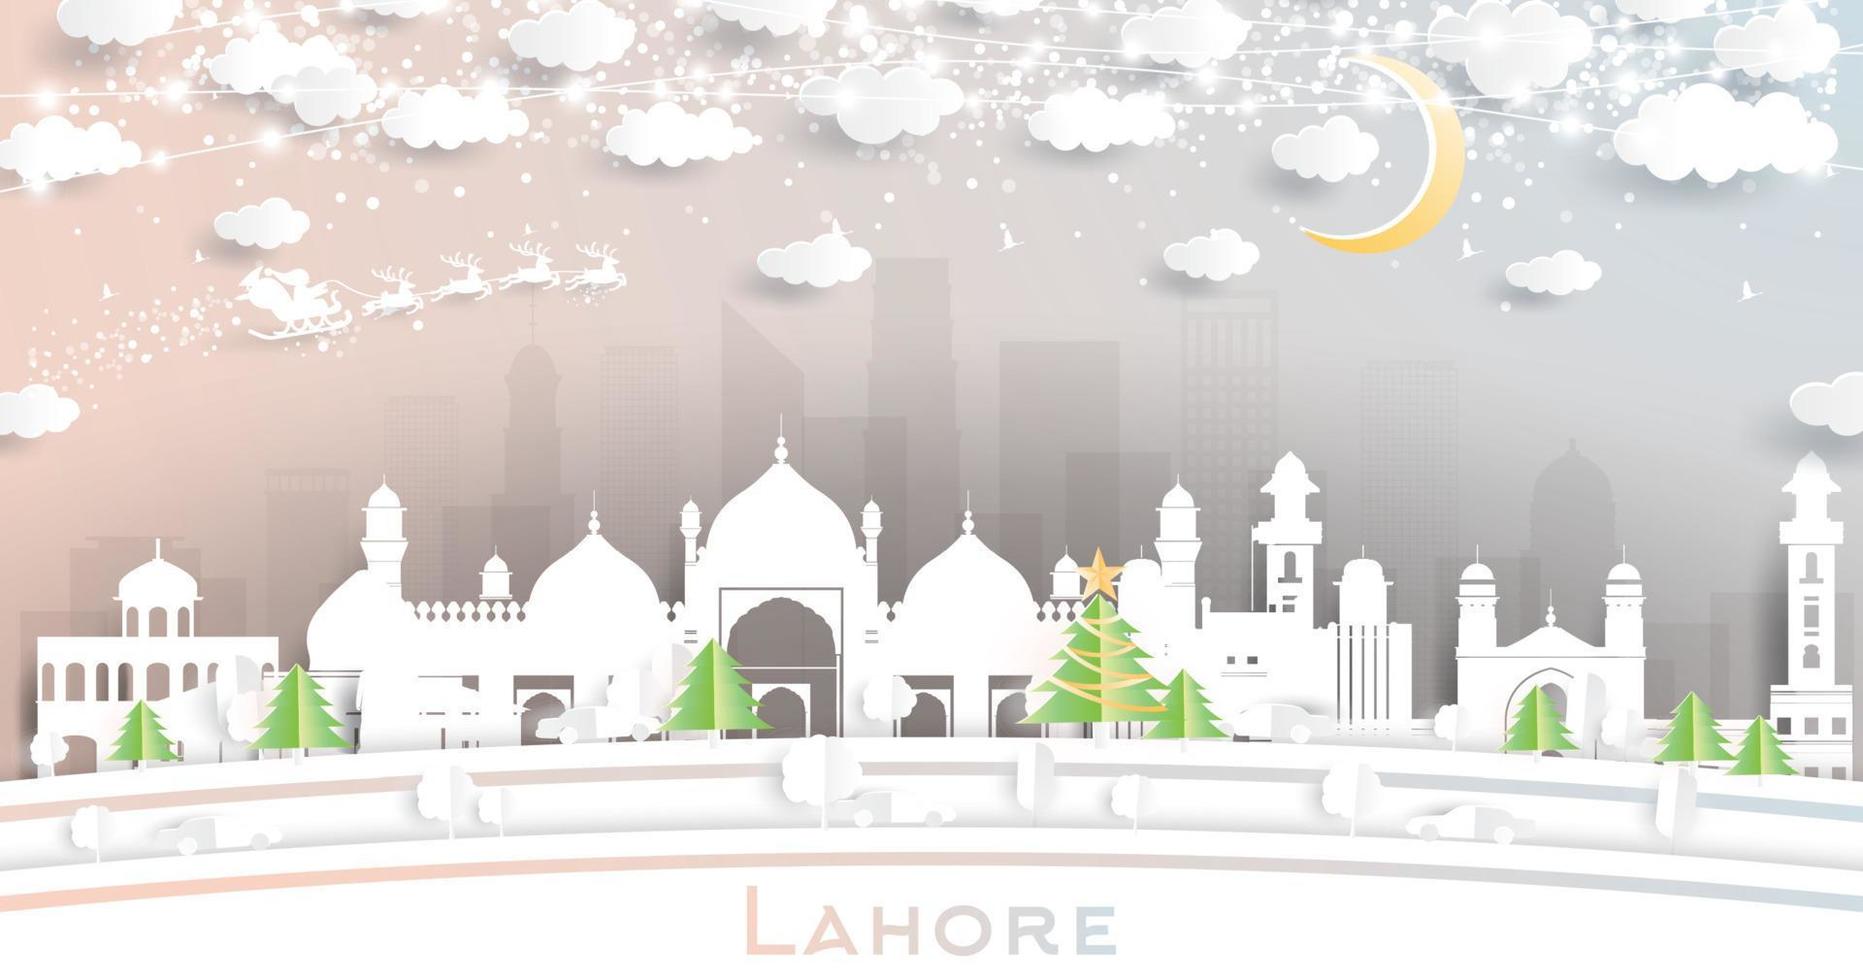 lahore Pakistan stad horizon in papier besnoeiing stijl met sneeuwvlokken, maan en neon guirlande. vector